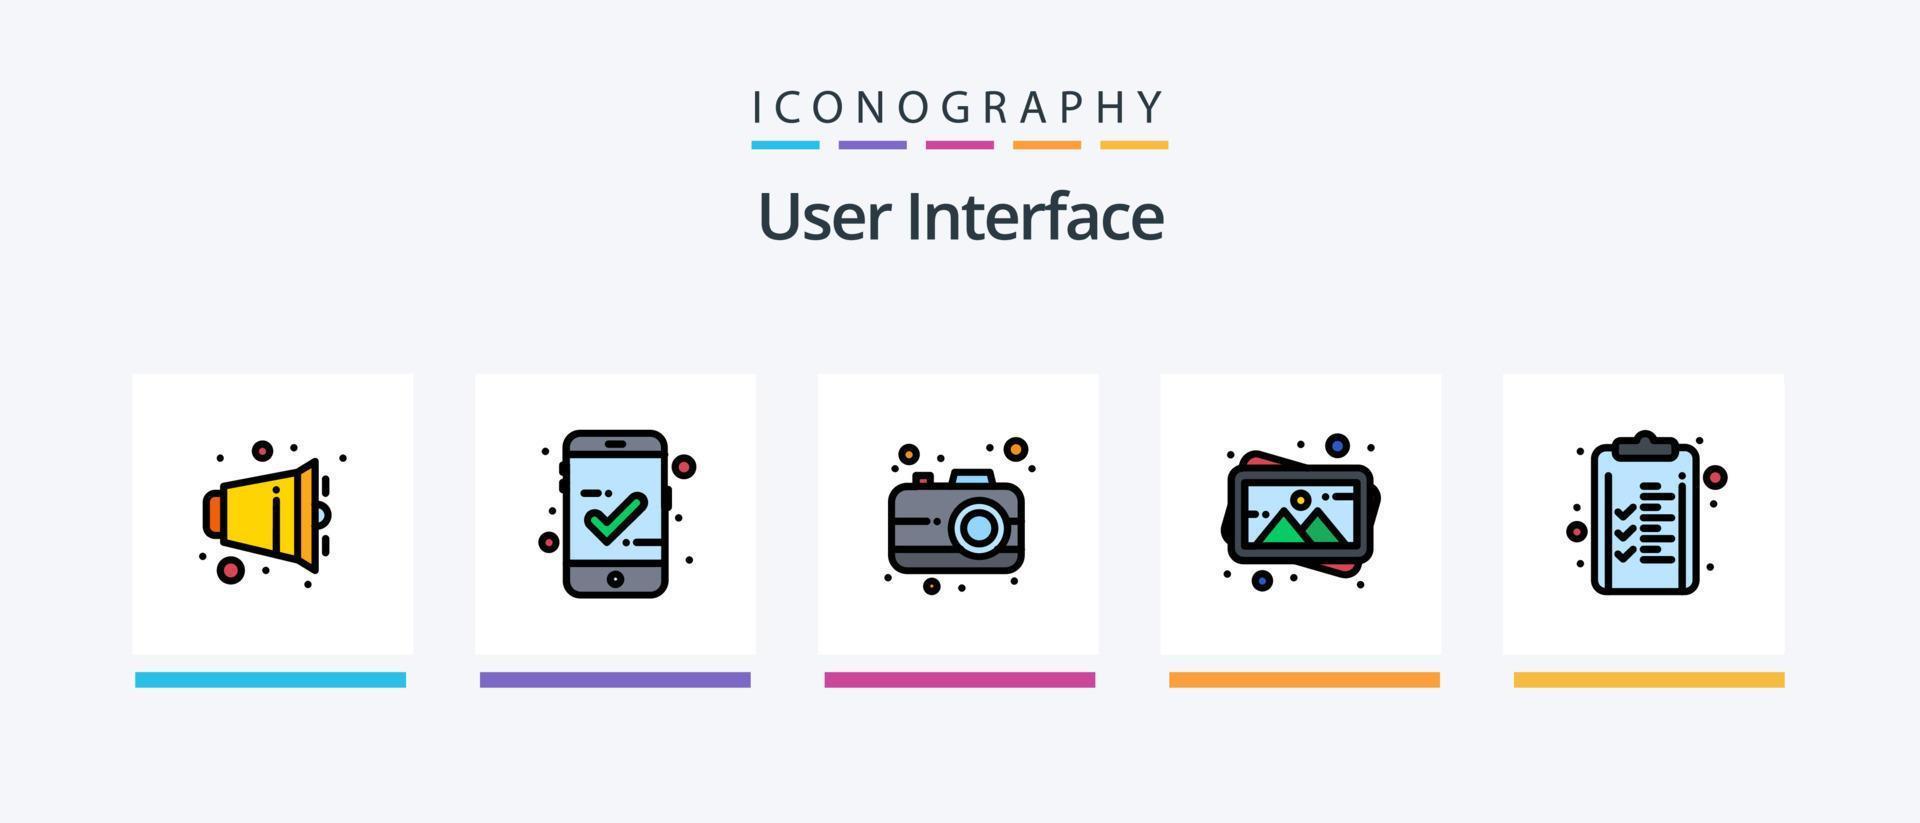 ligne d'interface utilisateur remplie de 5 packs d'icônes comprenant. cible. interface. objectifs. bijou. conception d'icônes créatives vecteur